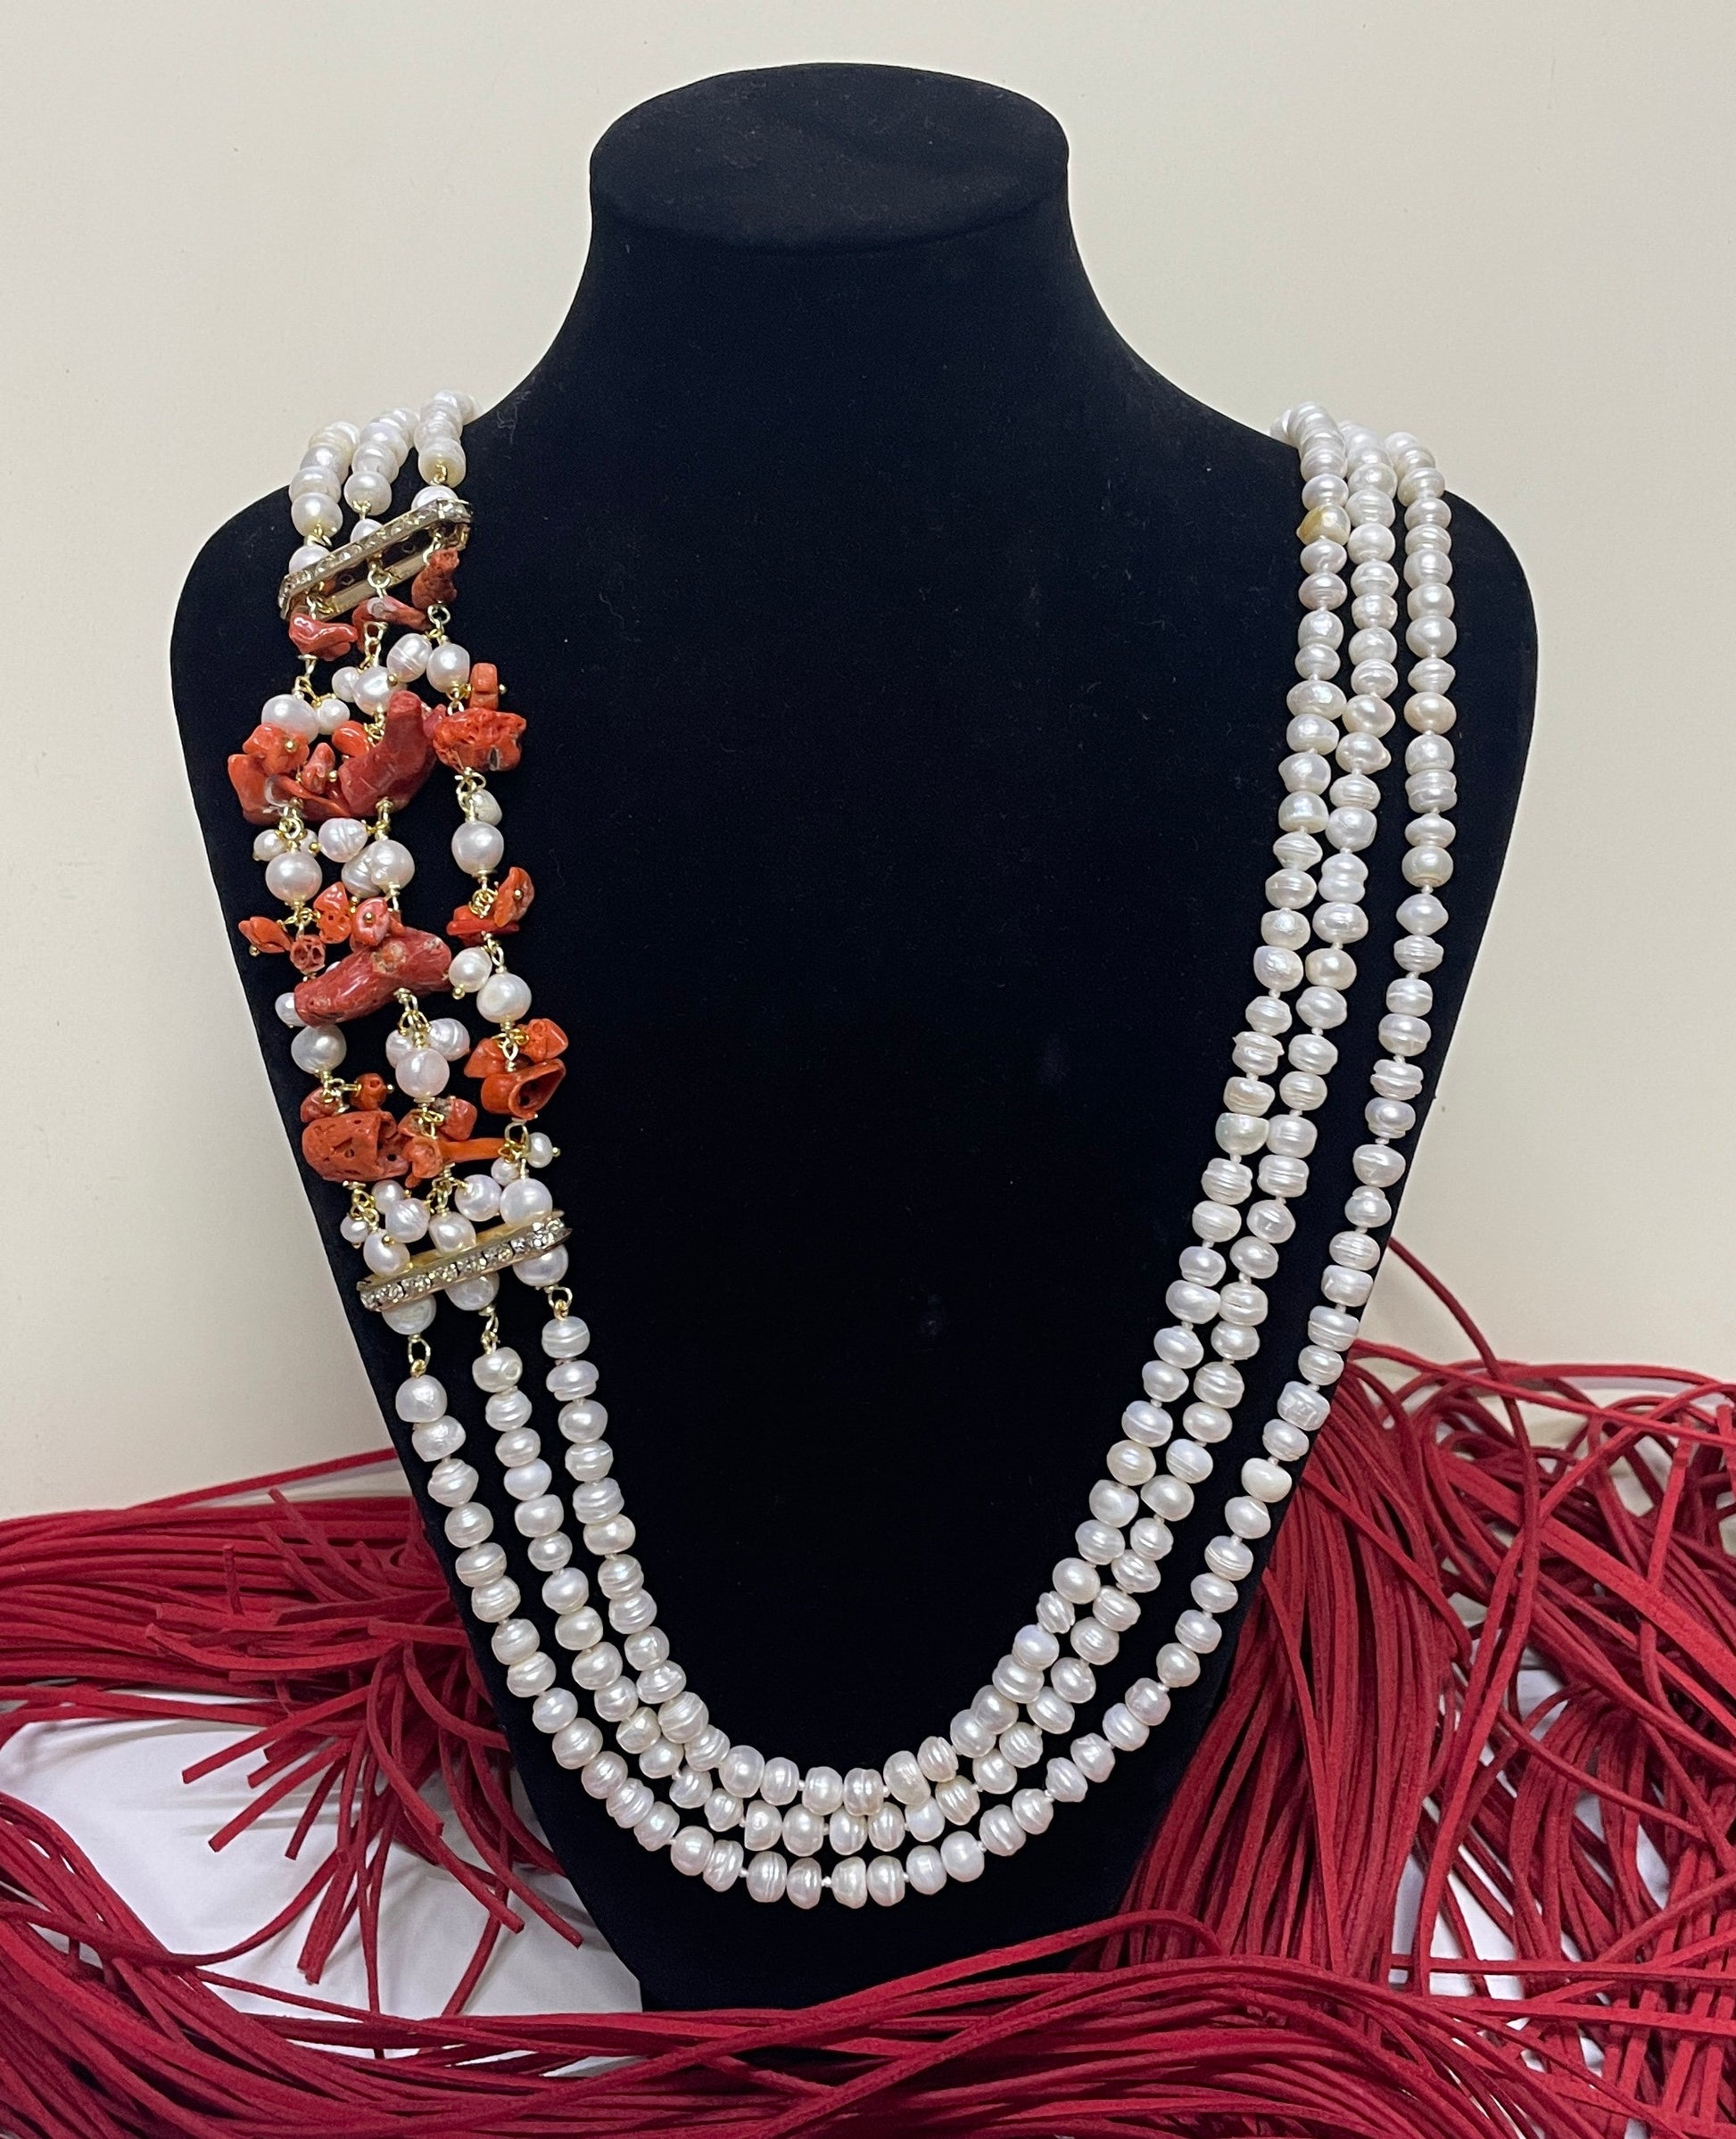 Collana multifilo con perle di fiume, collana Corallo e perle, Corallo naturale del Mediterraneo, collana maxi, regalo sposa, collana boho.&